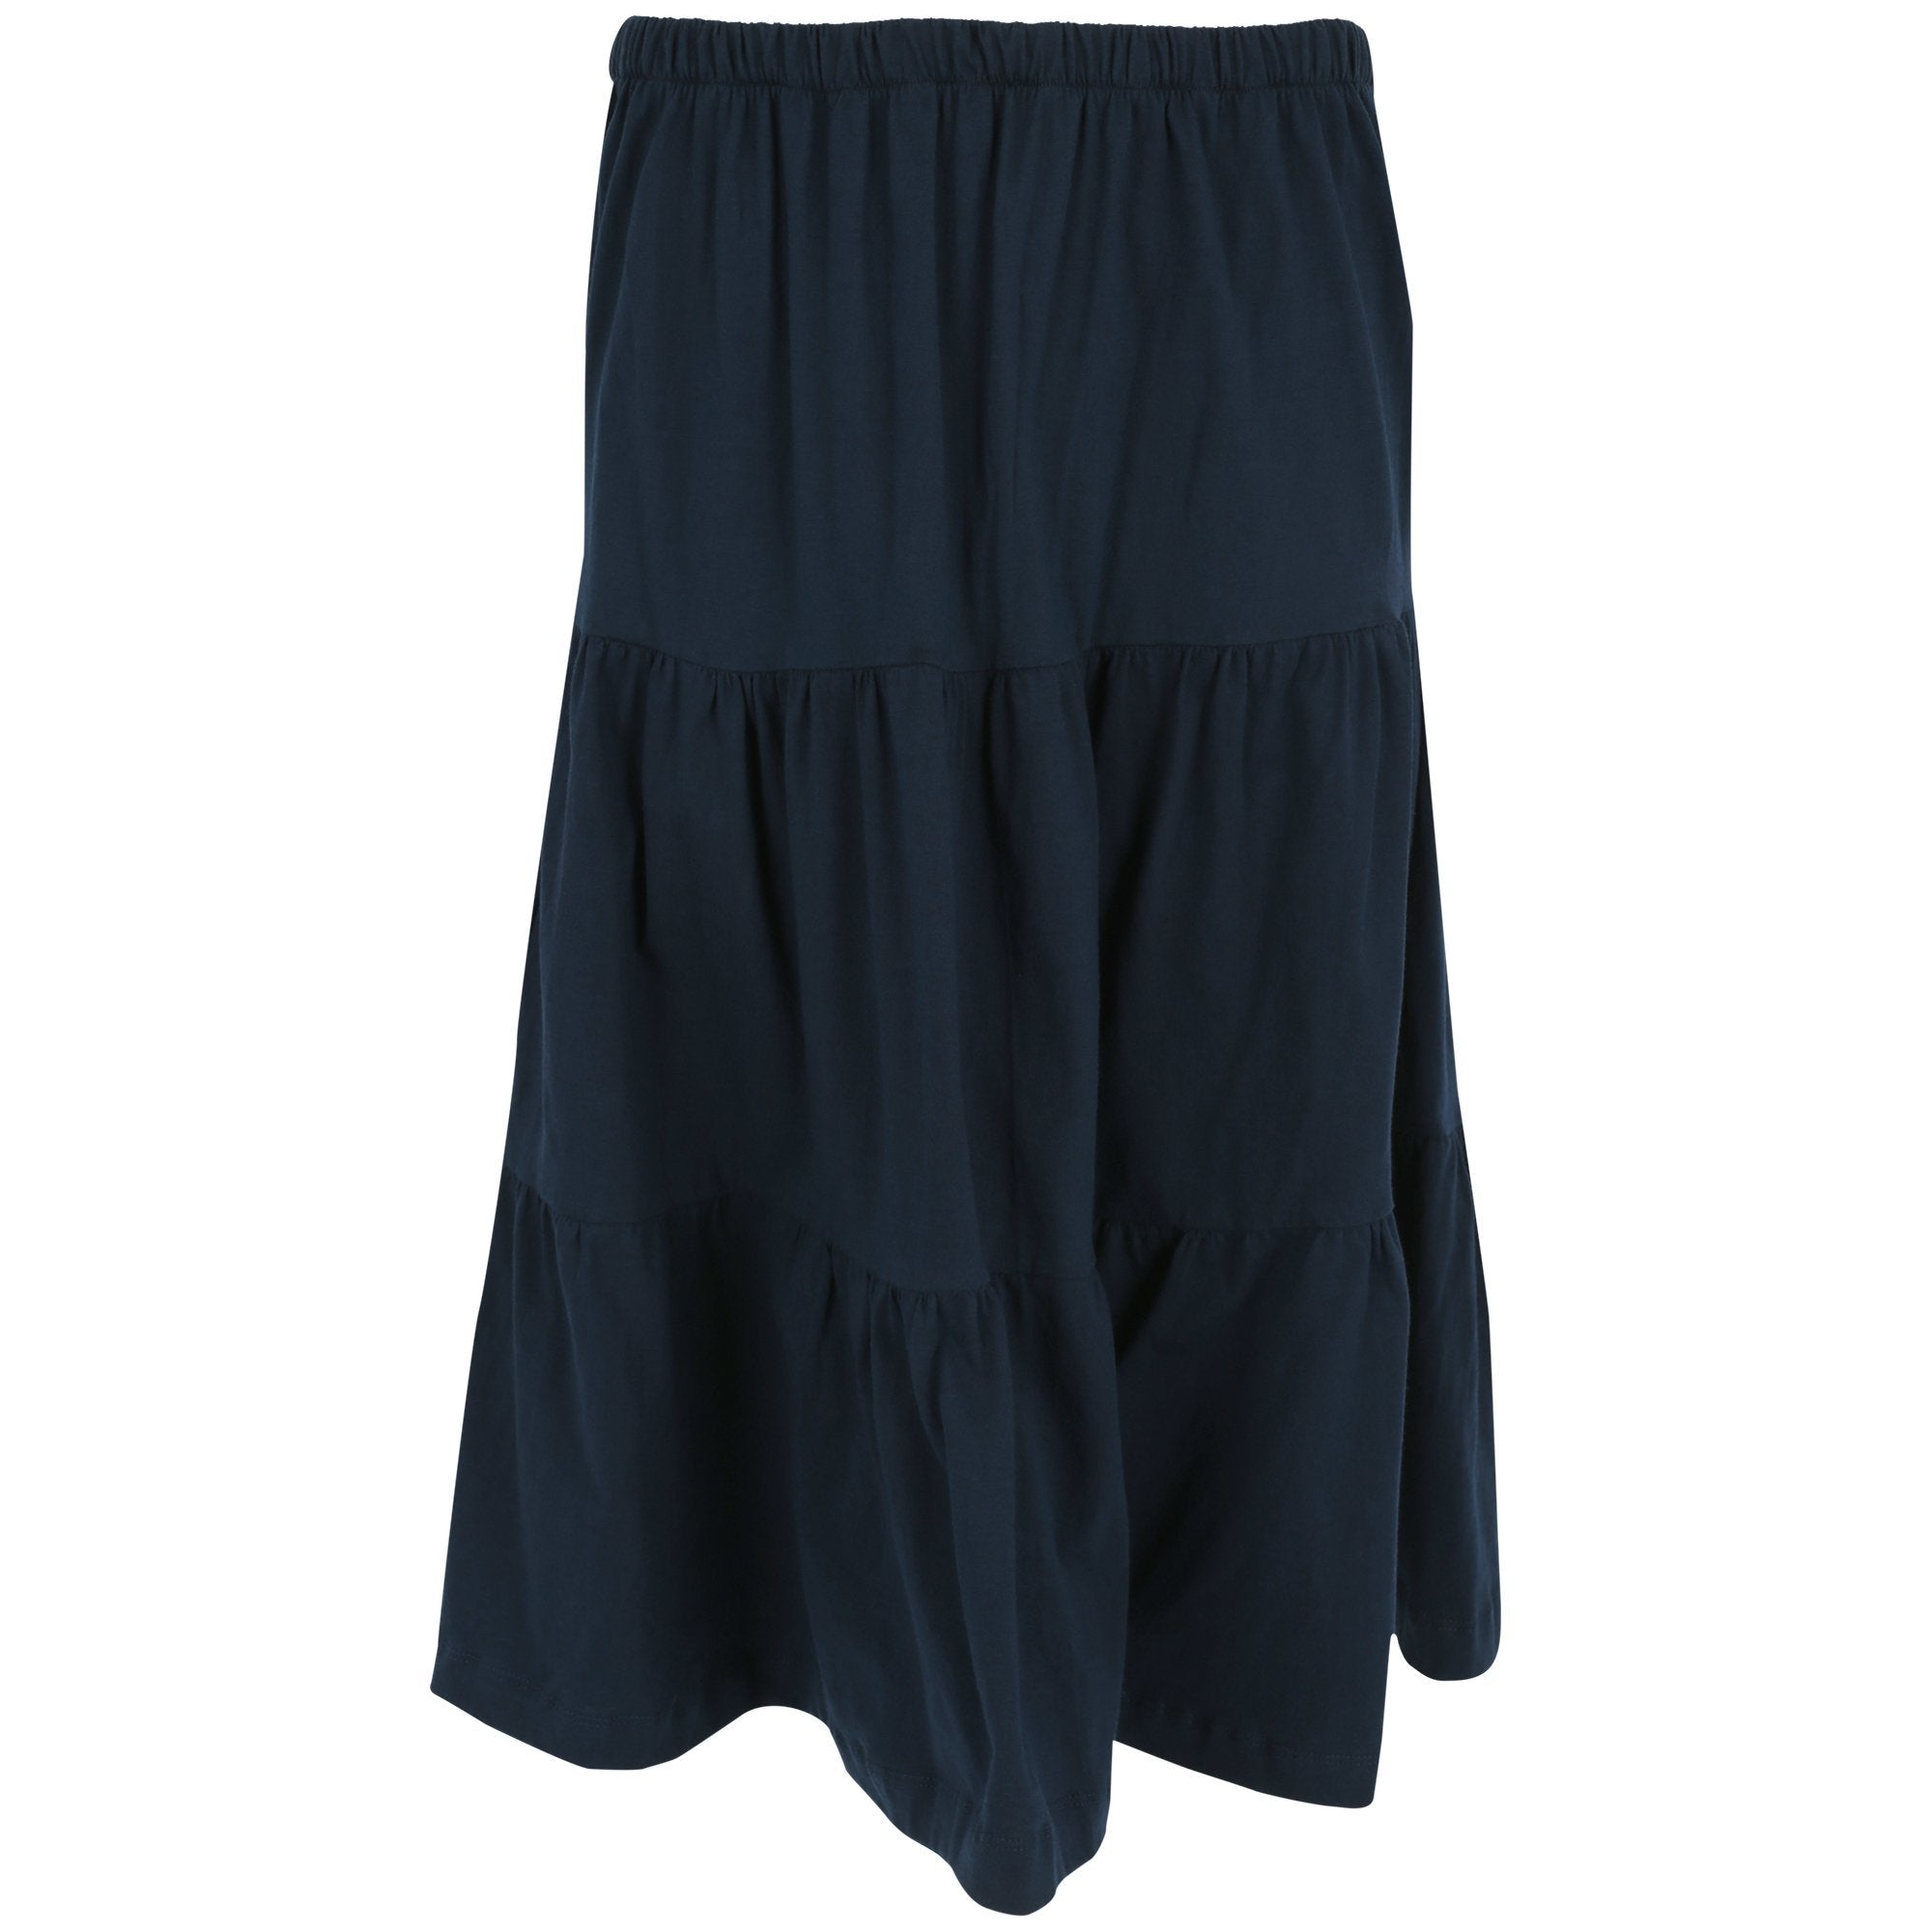 Organic Tiered Travel Skirt - Navy - S